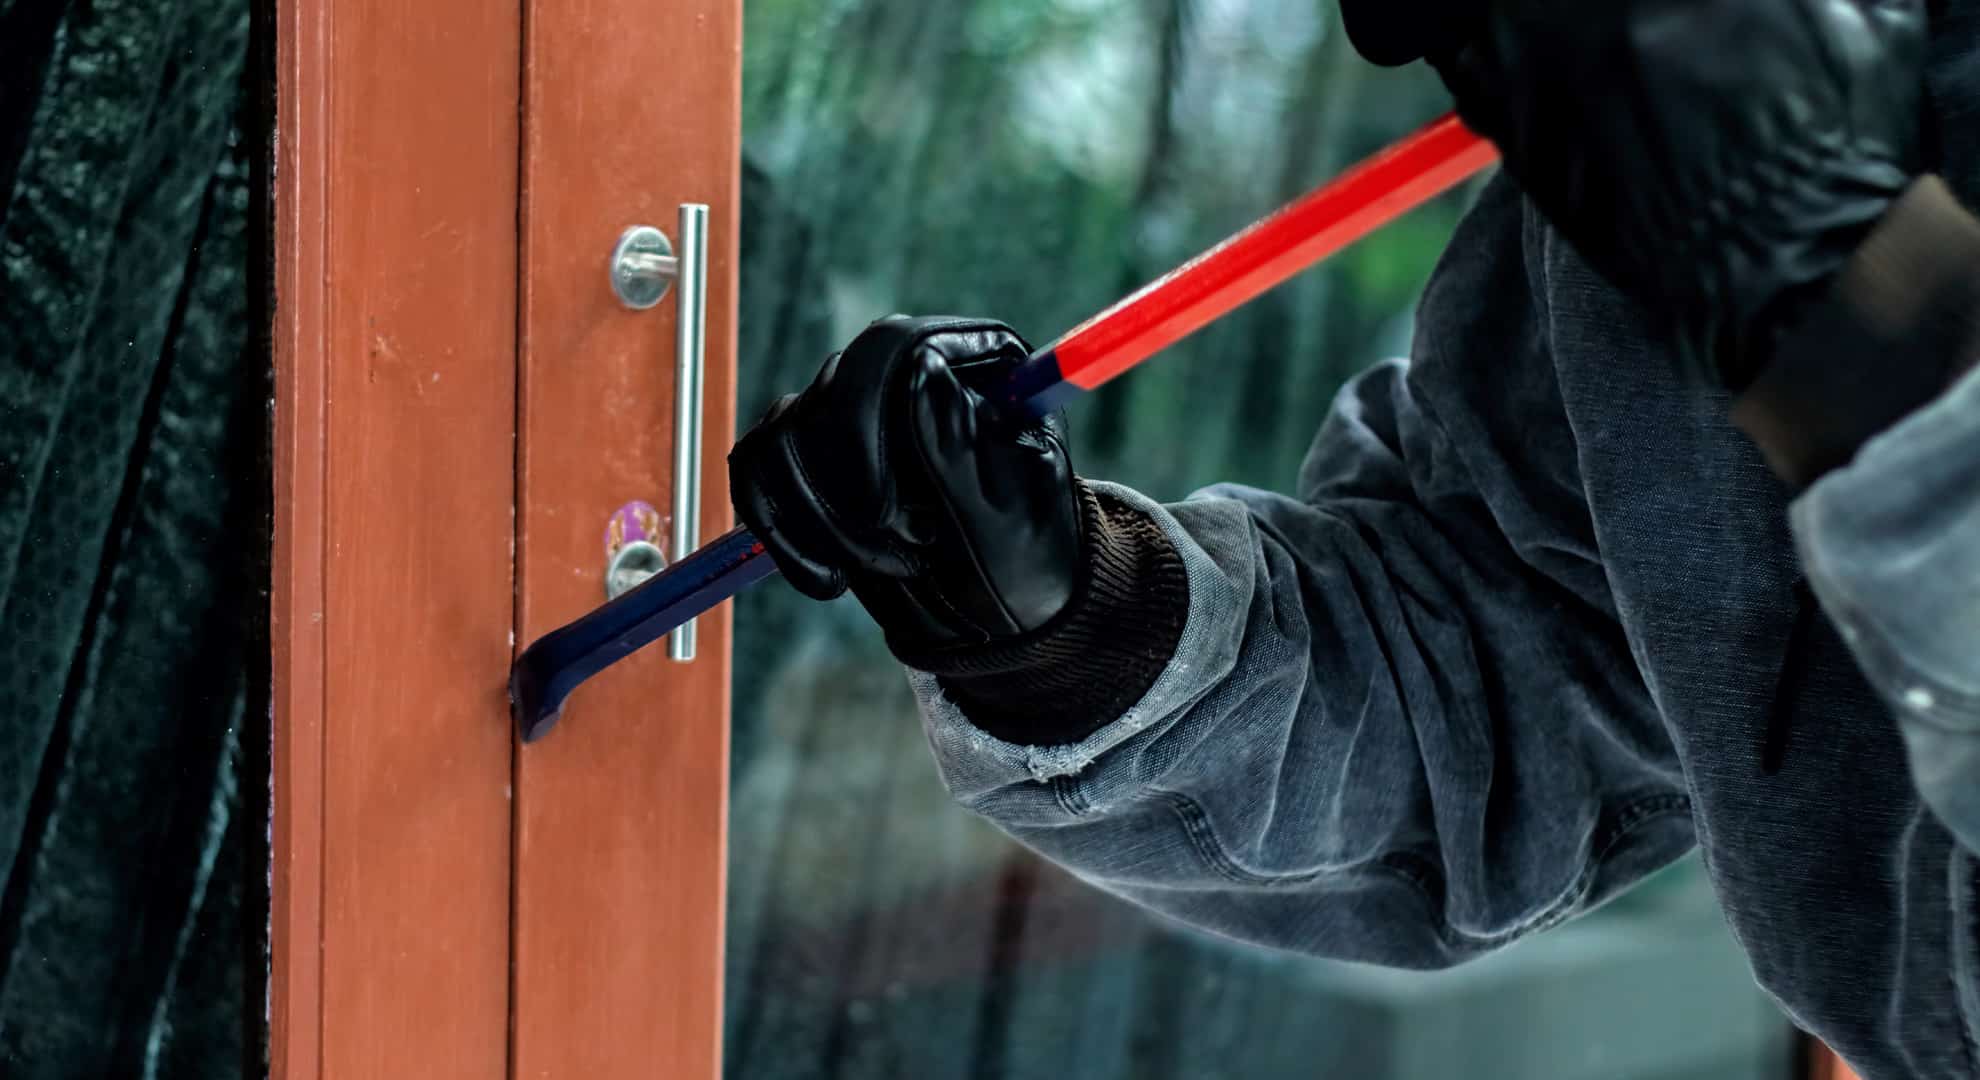 burglar-with-crowbar-trying-break-door-enter-house